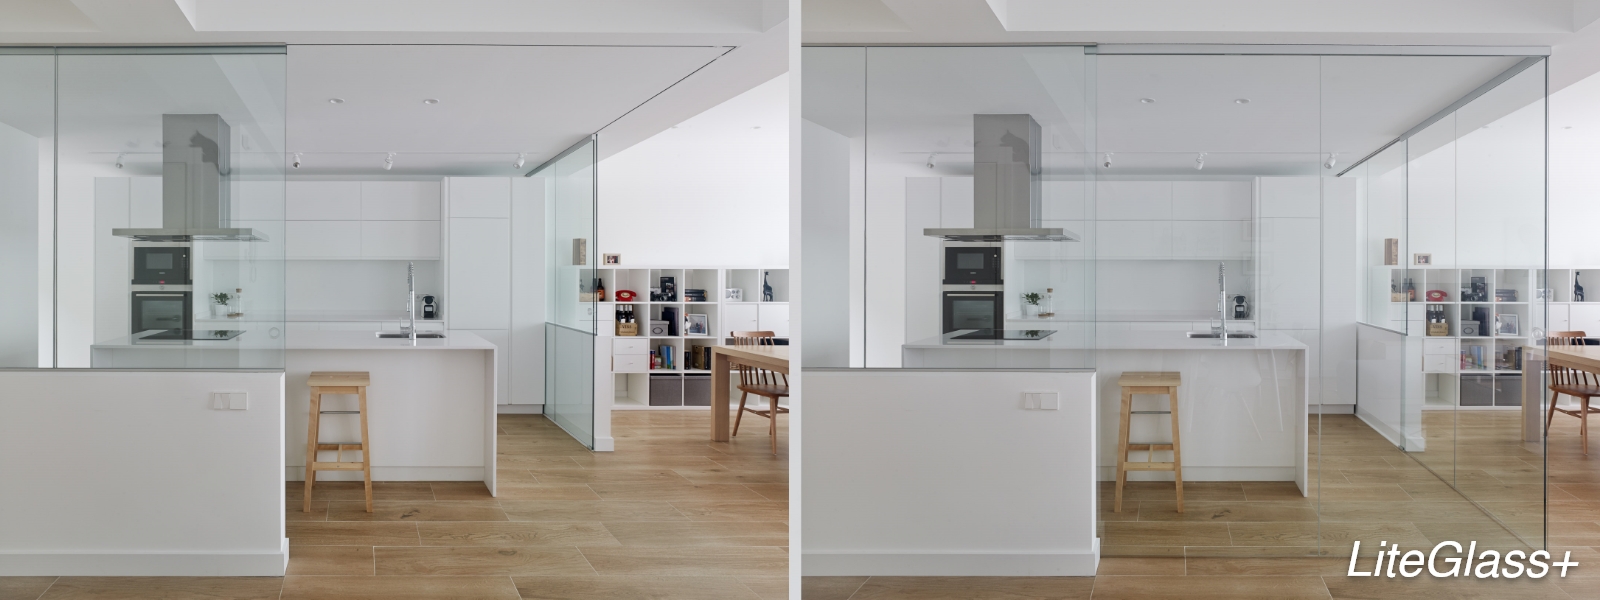 Op de foto zie je twee afbeeldingen van het zelfde schuifdeursysteem: De LiteGlass. In de linker afbeelding is het schuifdeursysteem open, in de rechter afbeelding zie je dat de gesloten schuifdeur de keuken op een transparante manier afsluit.